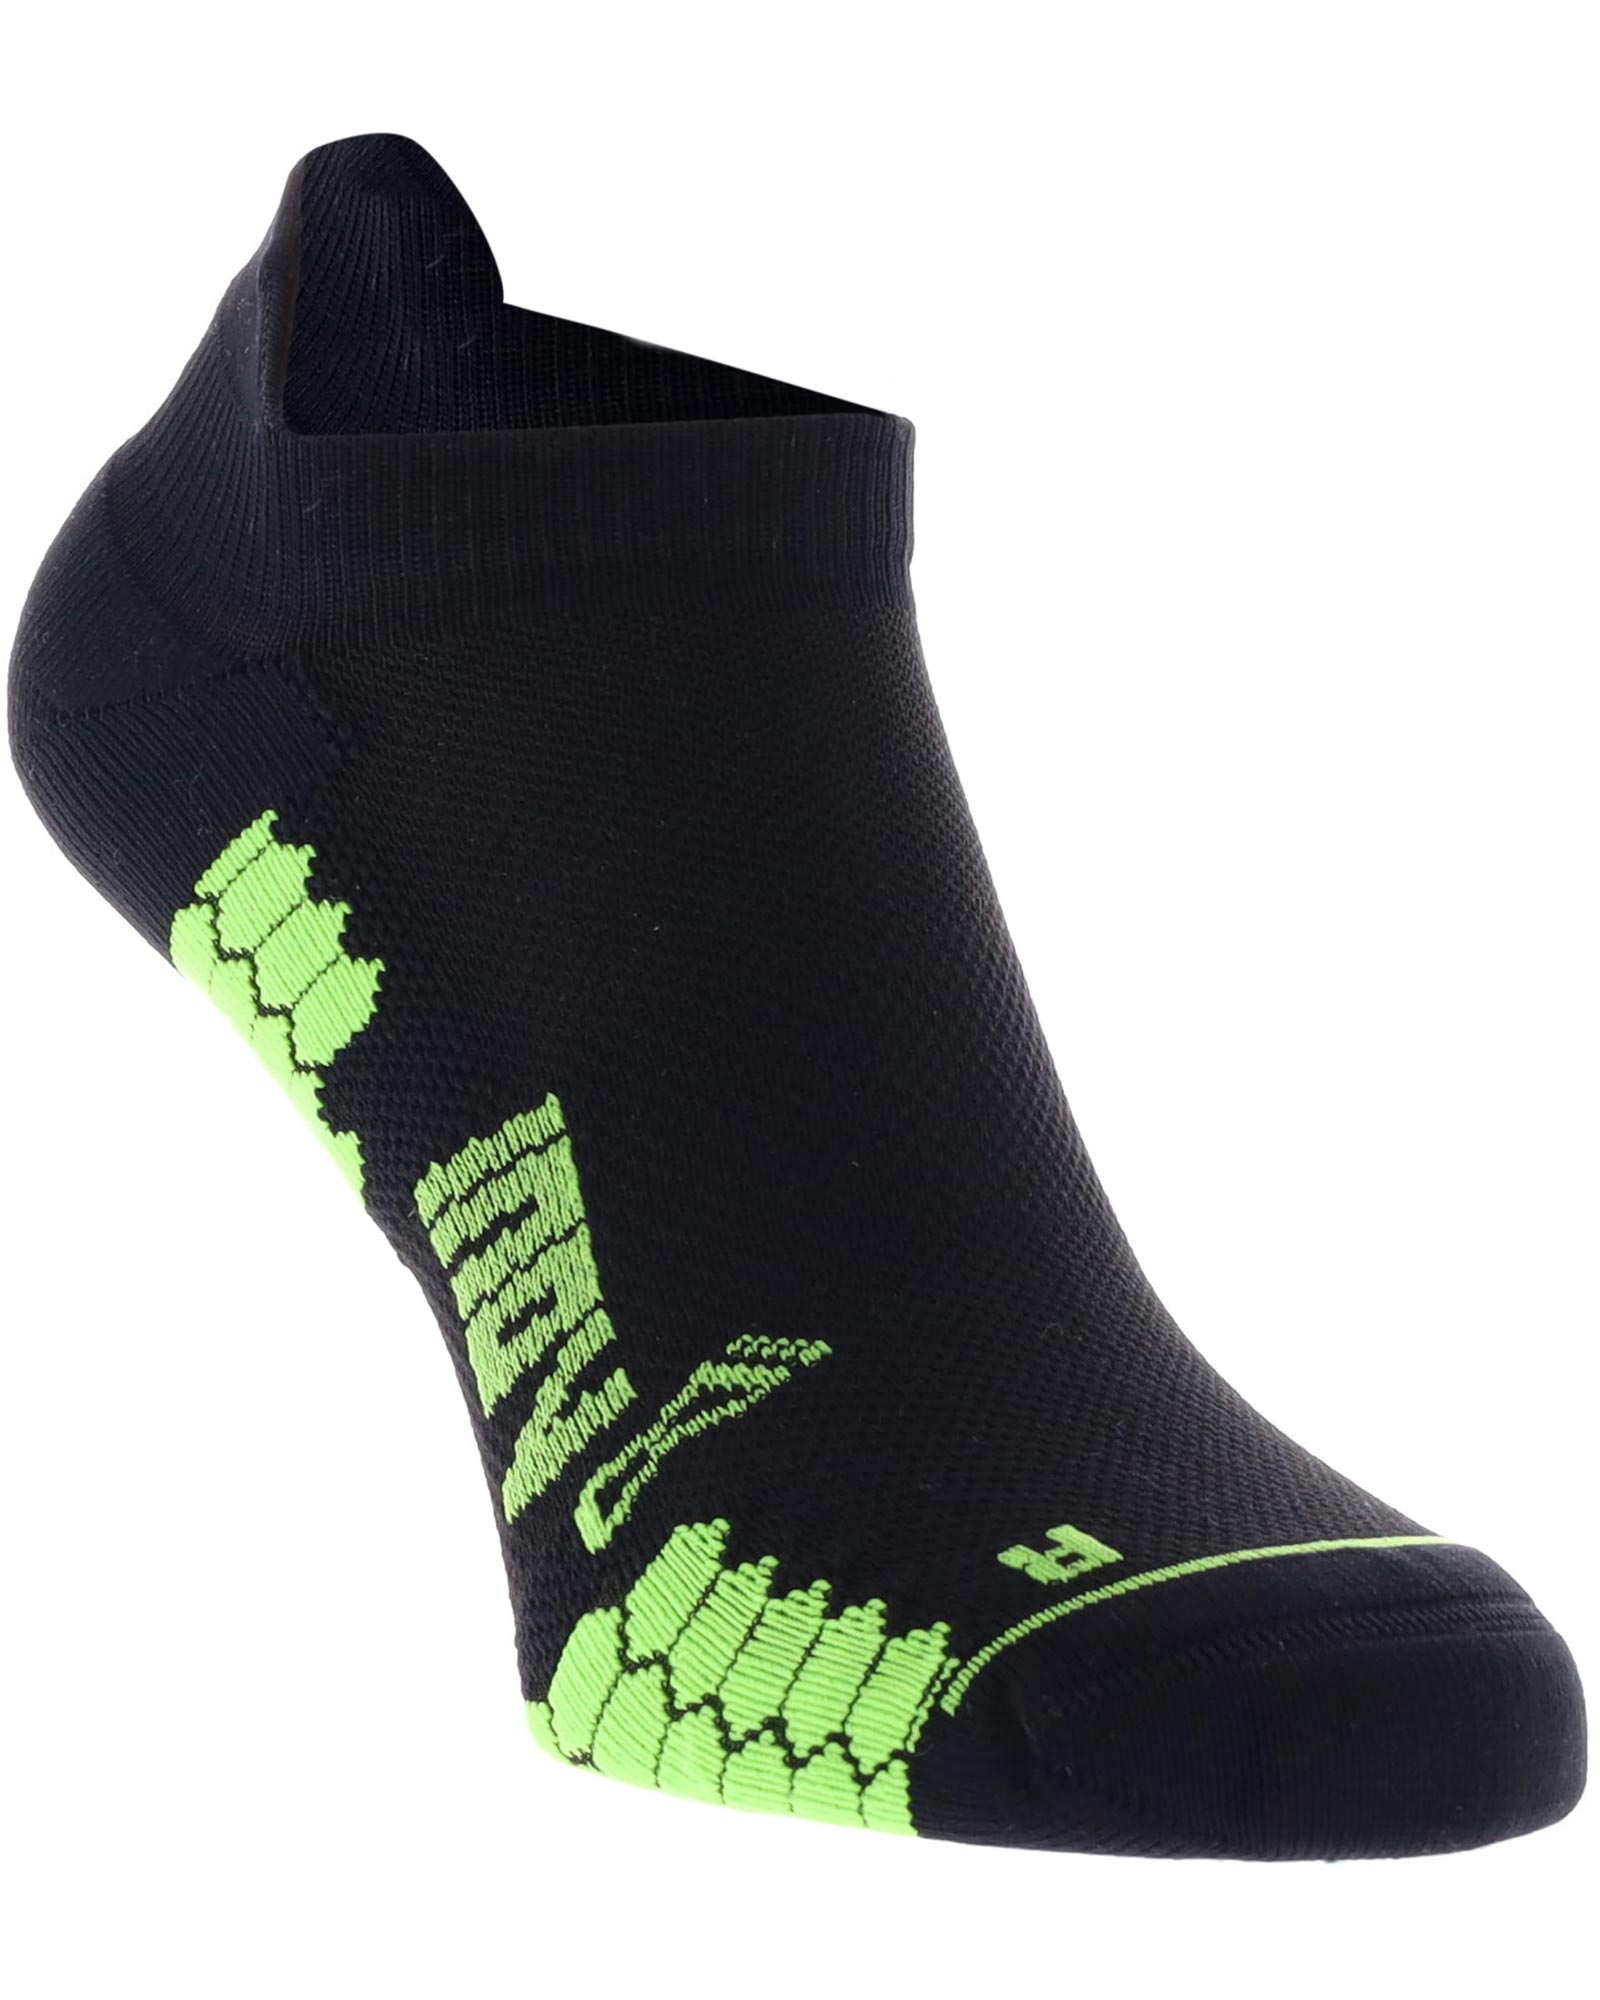 Inov 8 Trailfly Low Socks - Black/Green M